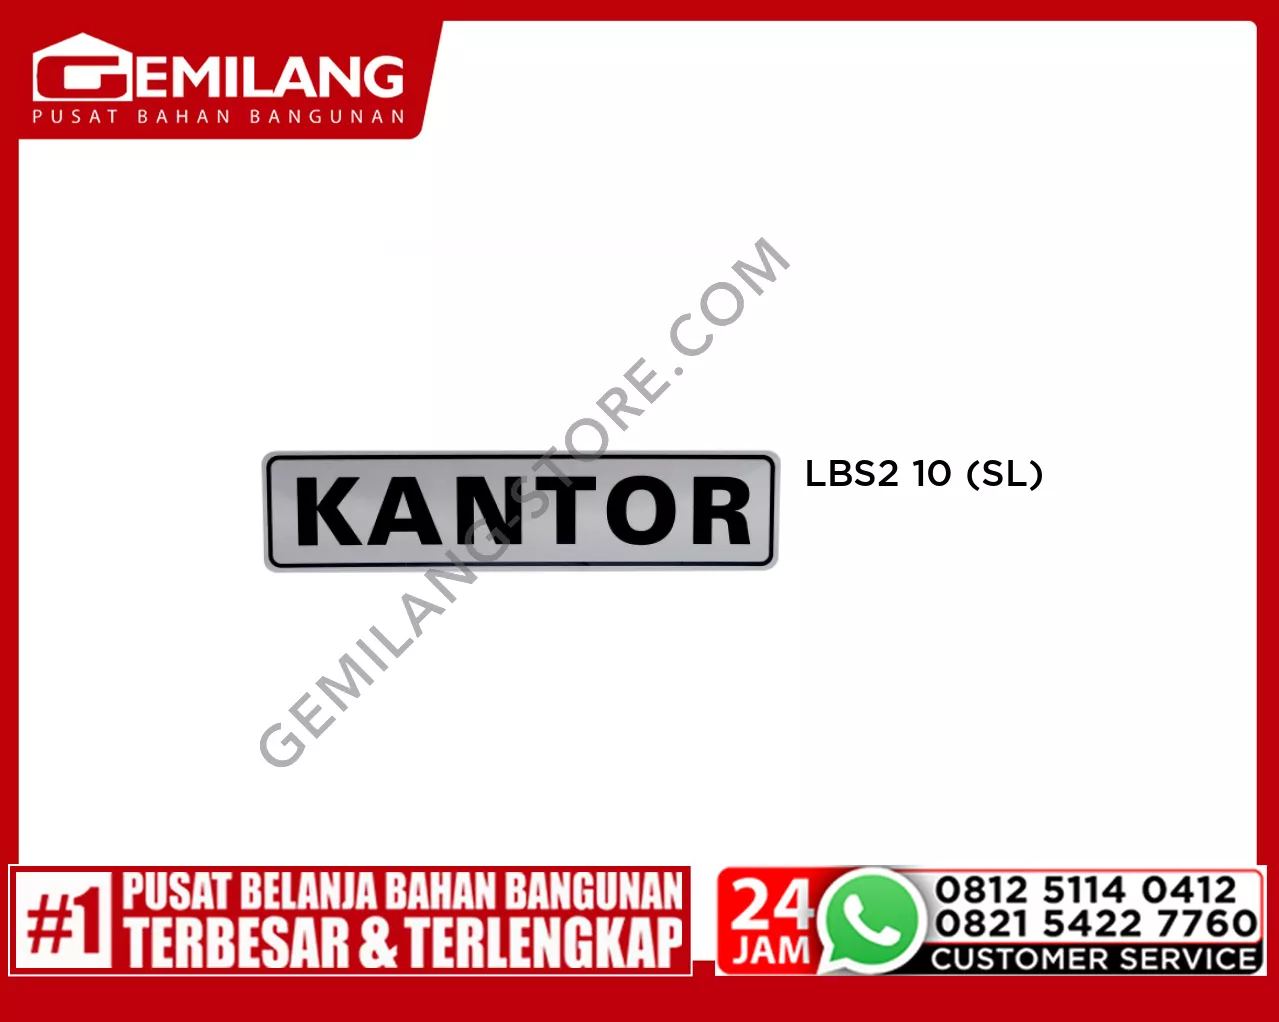 LBS2 10 KANTOR (SL)